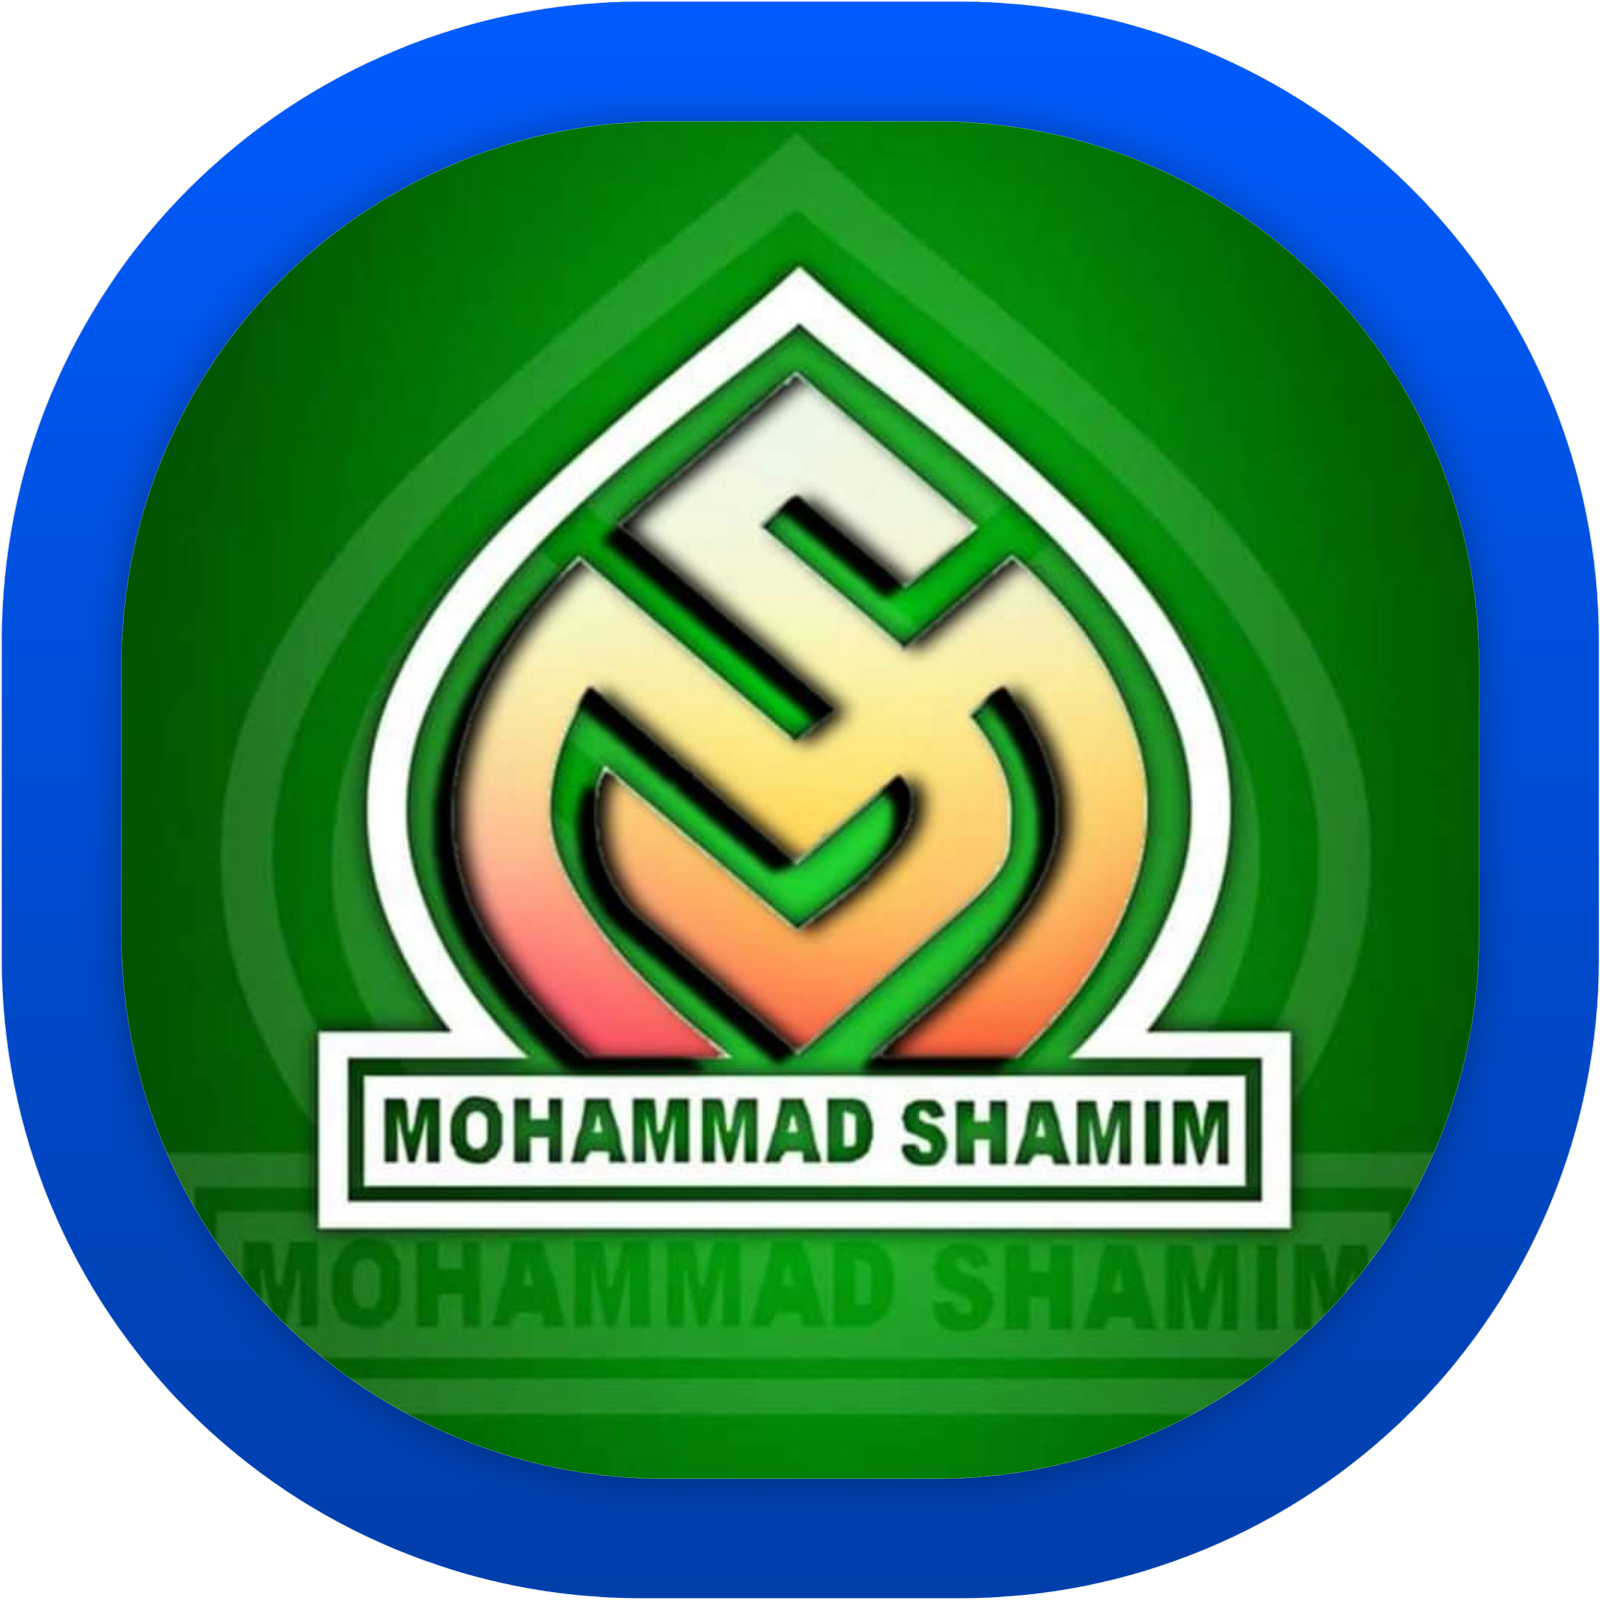 Mohammad Shamim